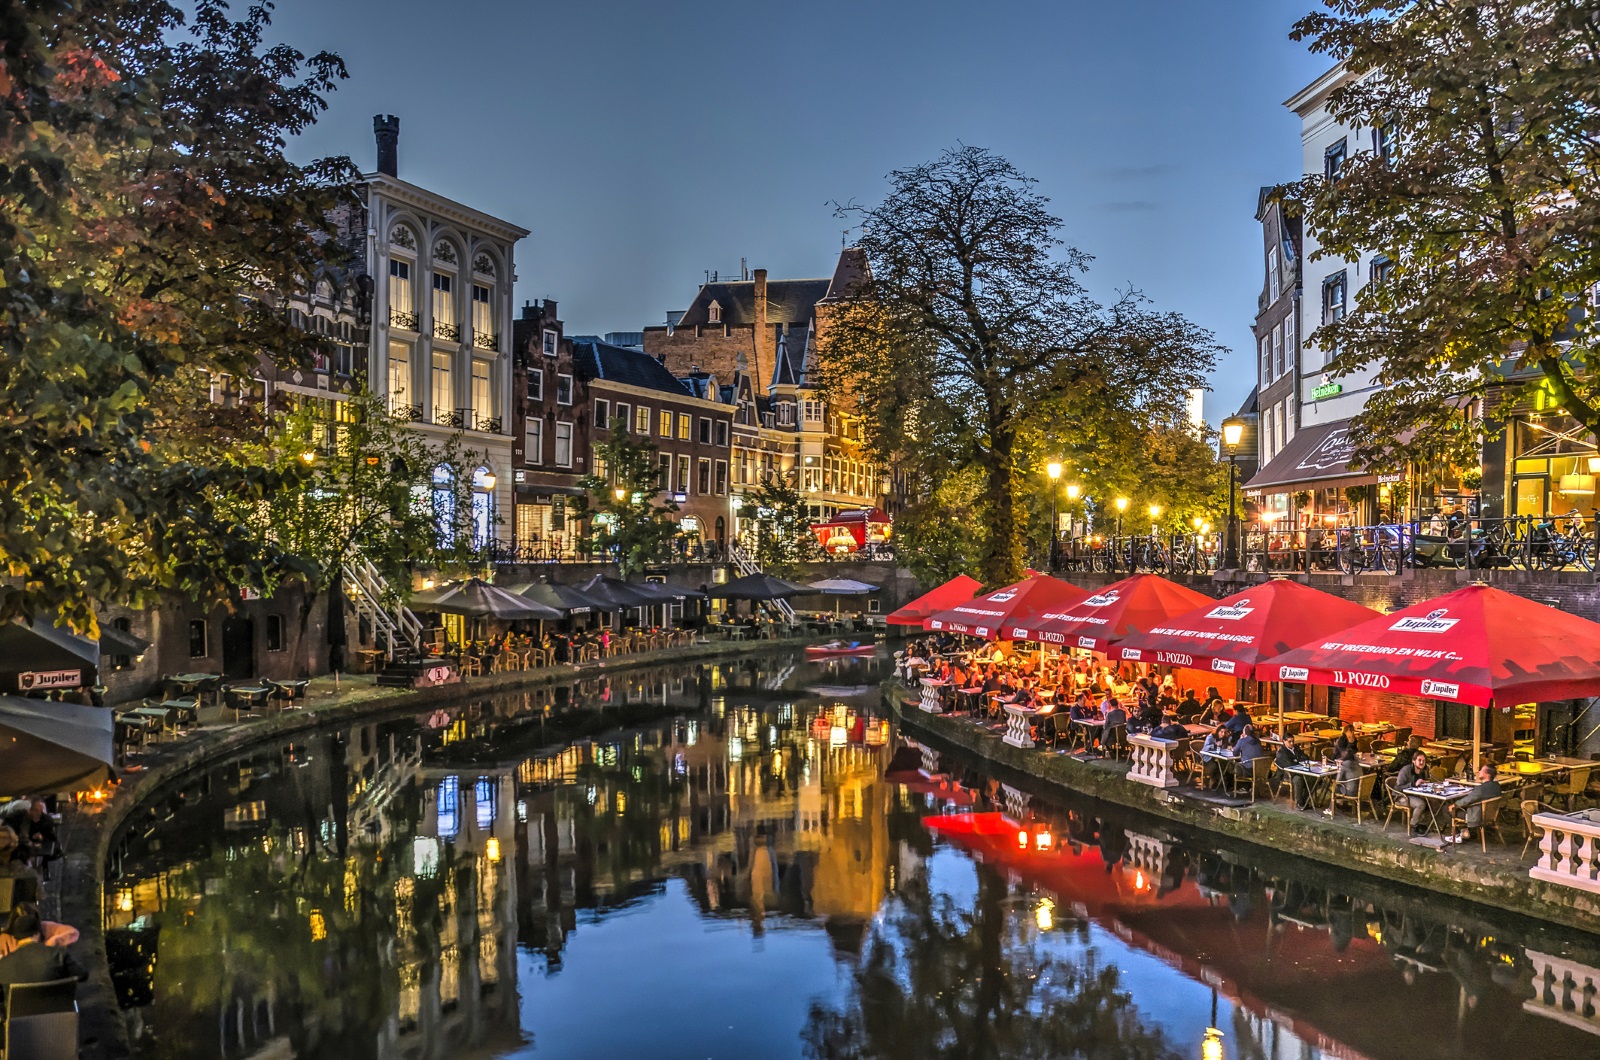 <p>Утрехт вместо Амстердам. Амстердам е много популярен сред туристите - дотолкова, че градът въведе специални предписания, такси и дори забрани за посетителите. Утрехт далеч не е така препълнен, а всъщност не отстъпва почти по нищо на Амстердам. Тук можете да се насладите в същата степен на типичния нидерландски чар.</p>